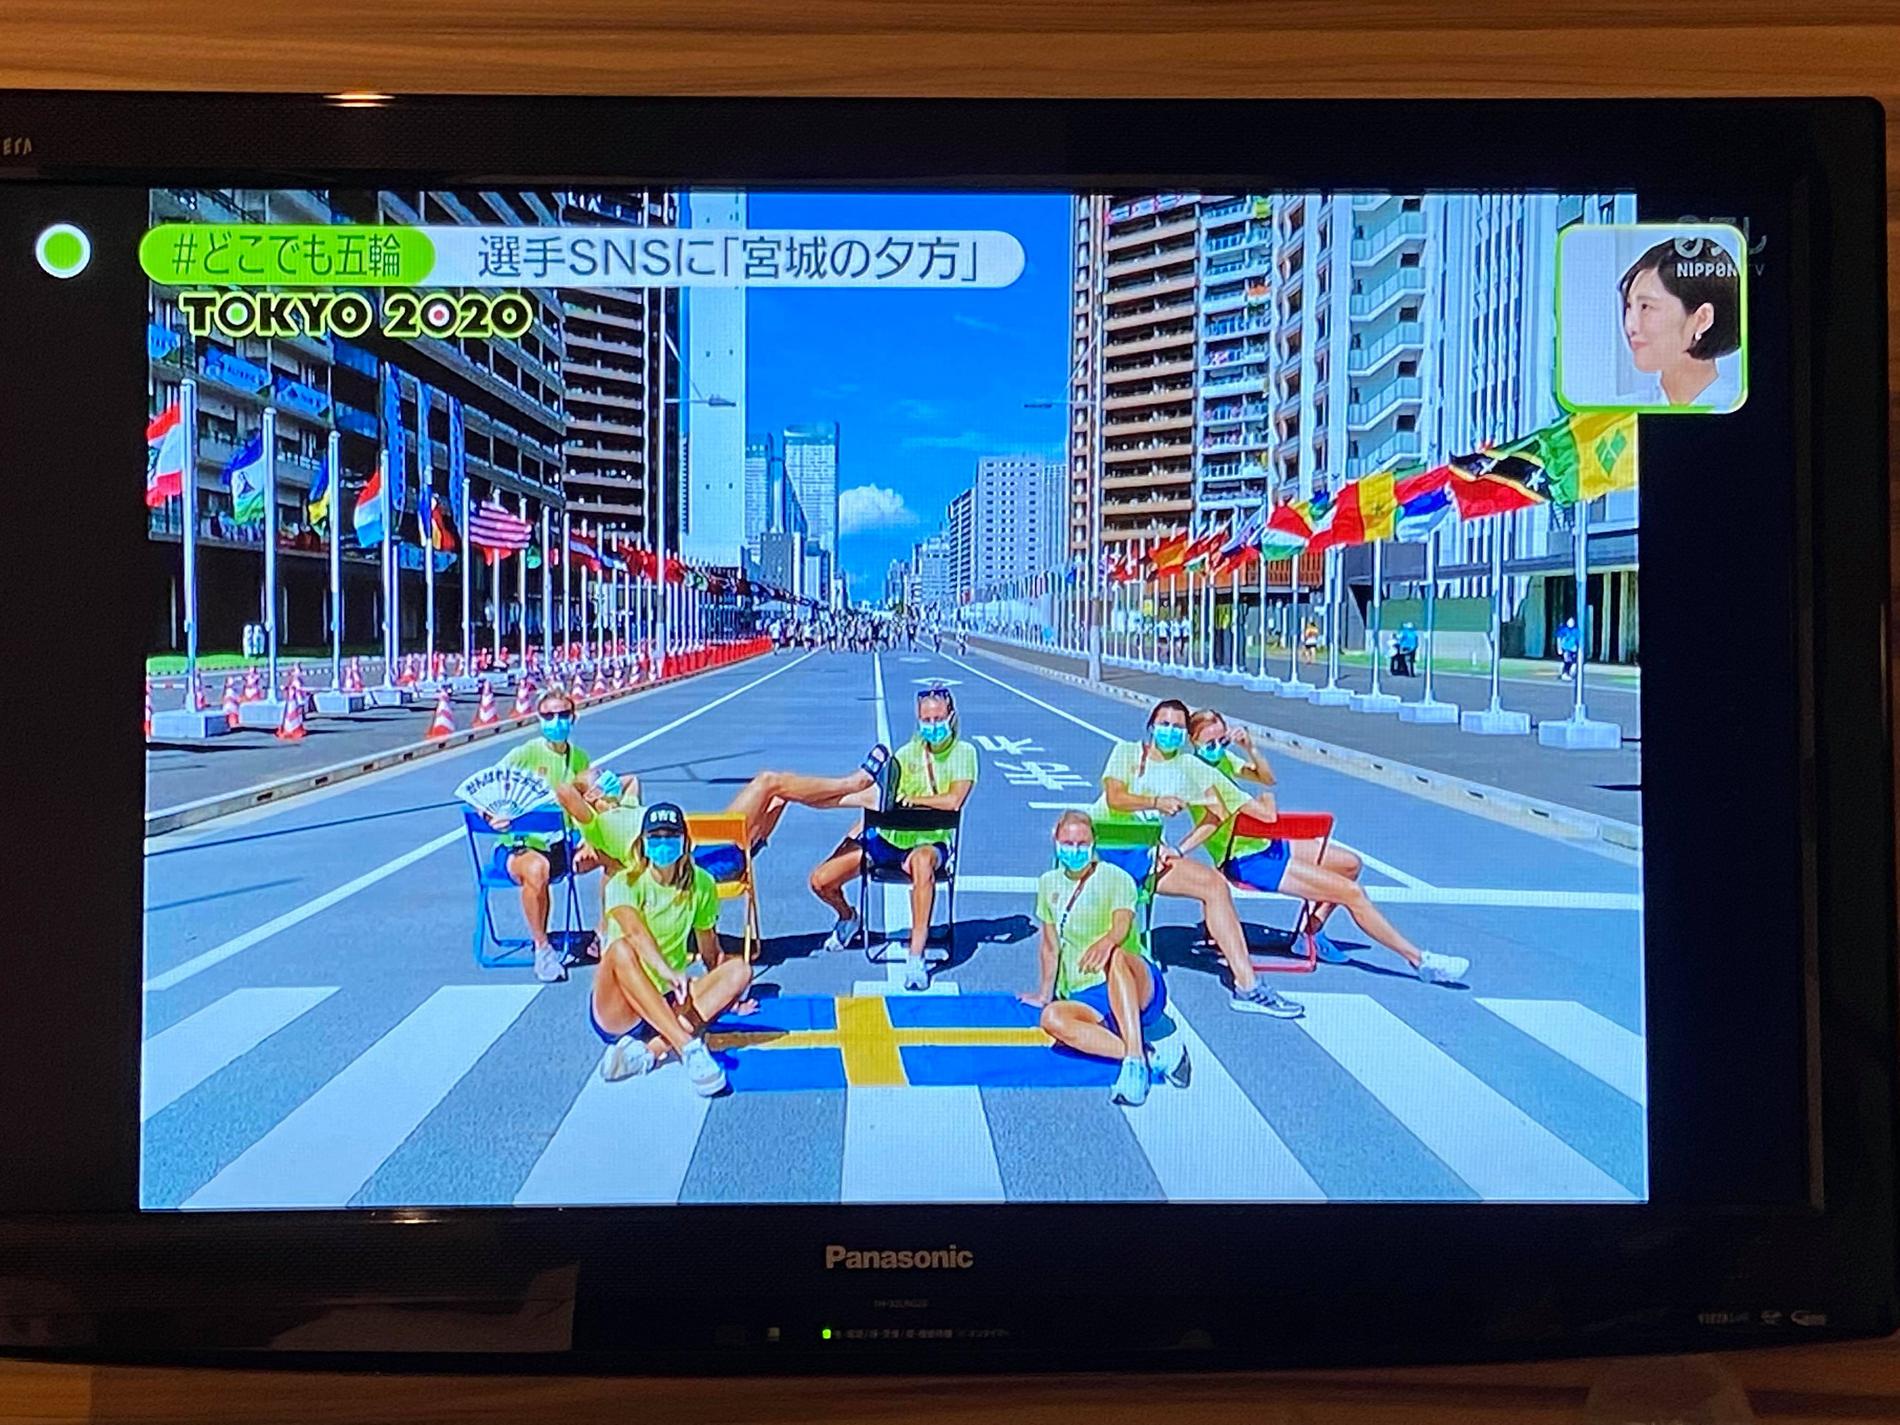 Det svenska lagets photo-session i OS-byn uppmärksammades, med positiva ordalag, i japansk riks-tv.